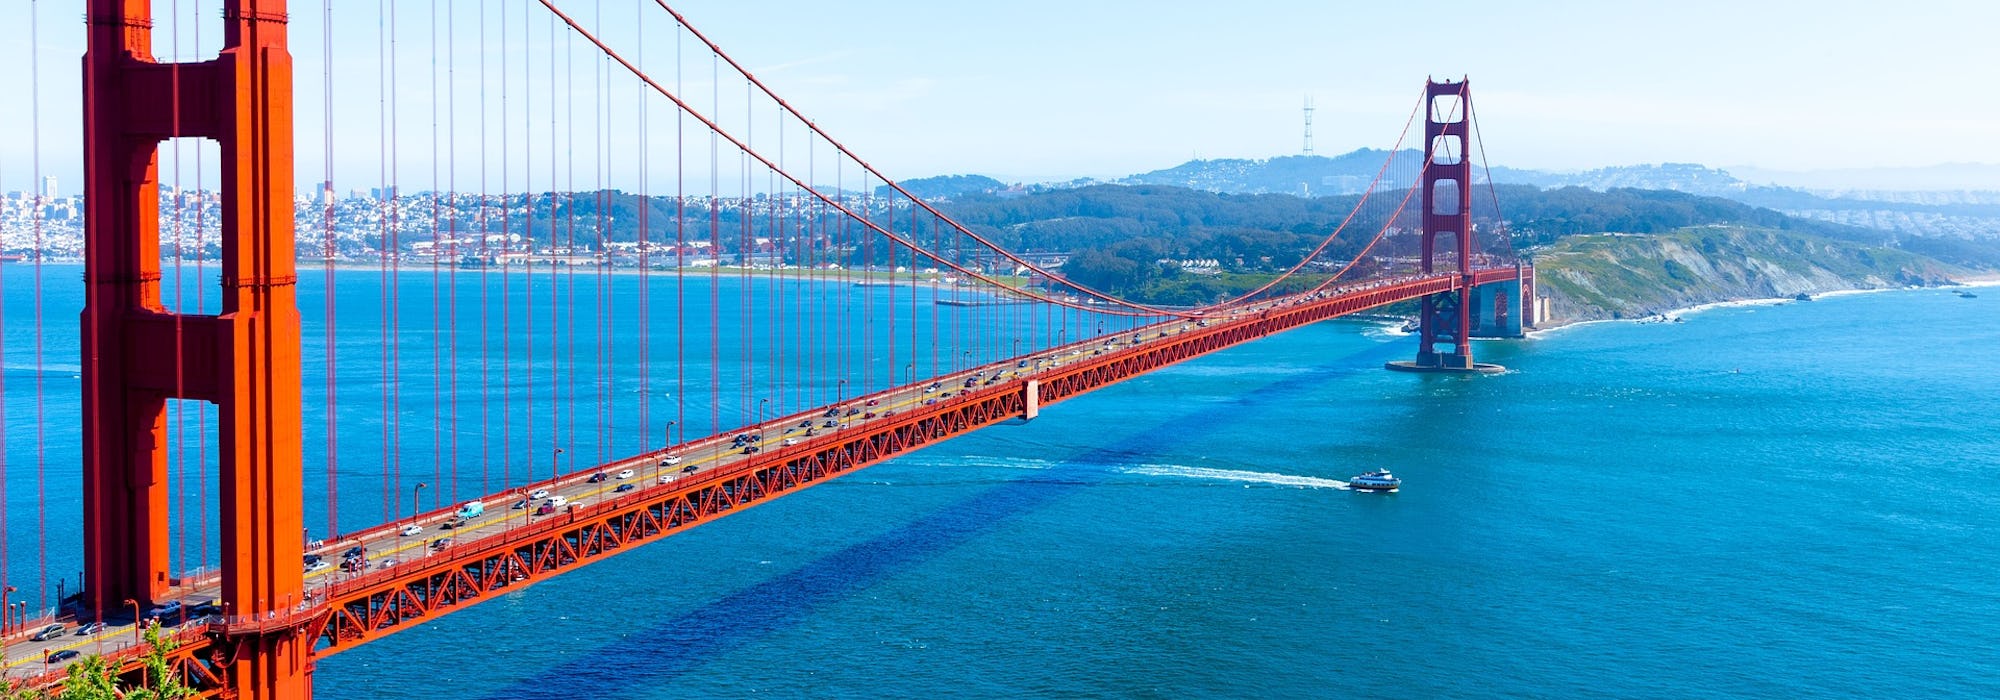 Vy snett uppifrån på den ikoniska och röda Golden Gate-bron i San Francisco.